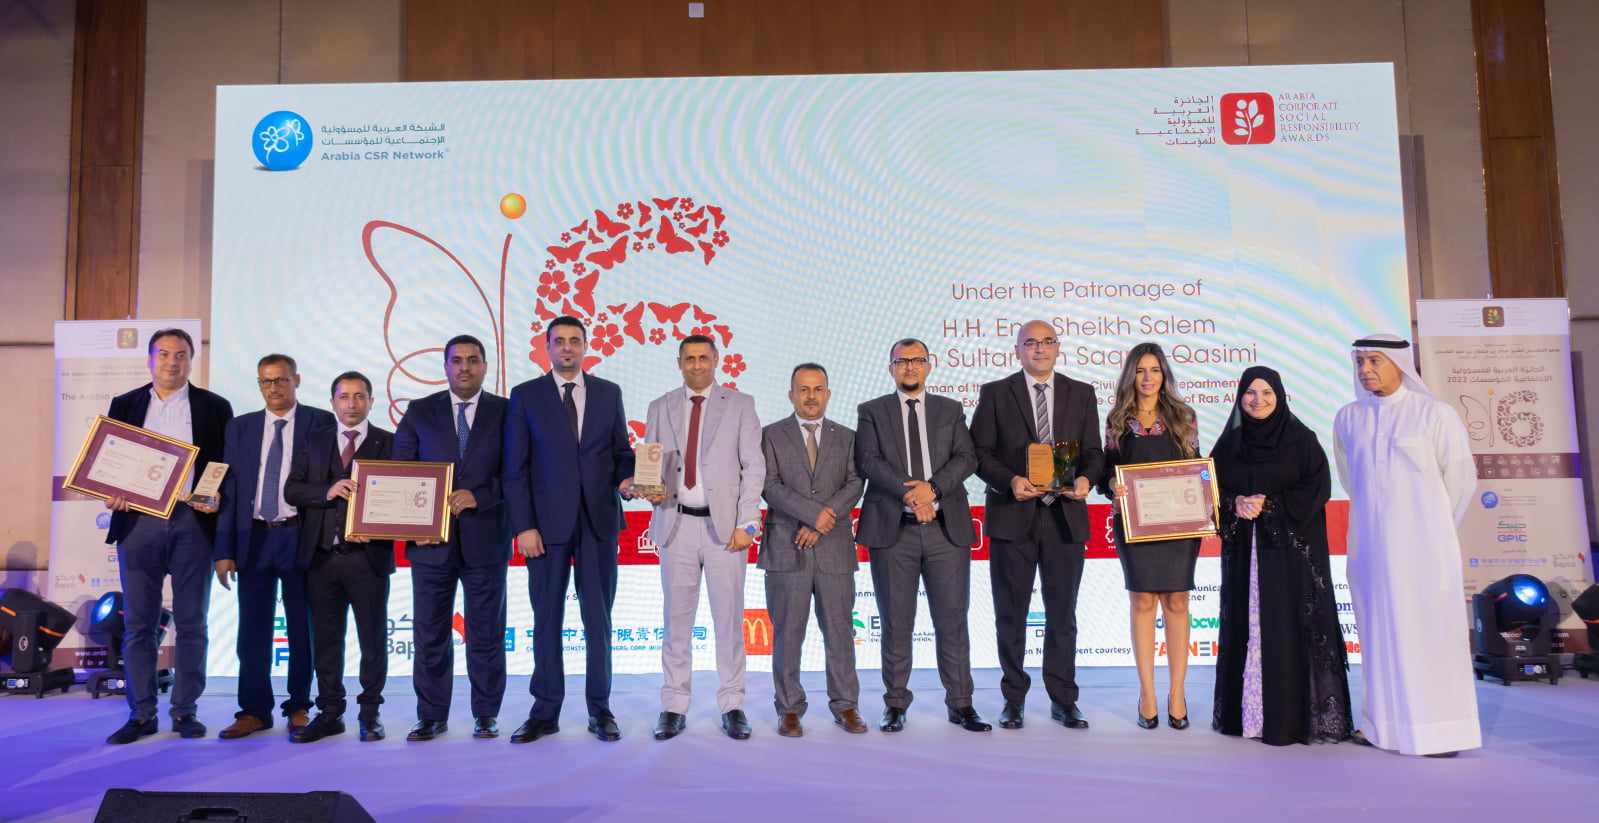 لأول مرة فى تاريخ اليمن.. بنك يمني يحصد الجائزة العربية للمسؤولية الإجتماعية على مستوى المنطقة العربية وشمال أفريقيا 